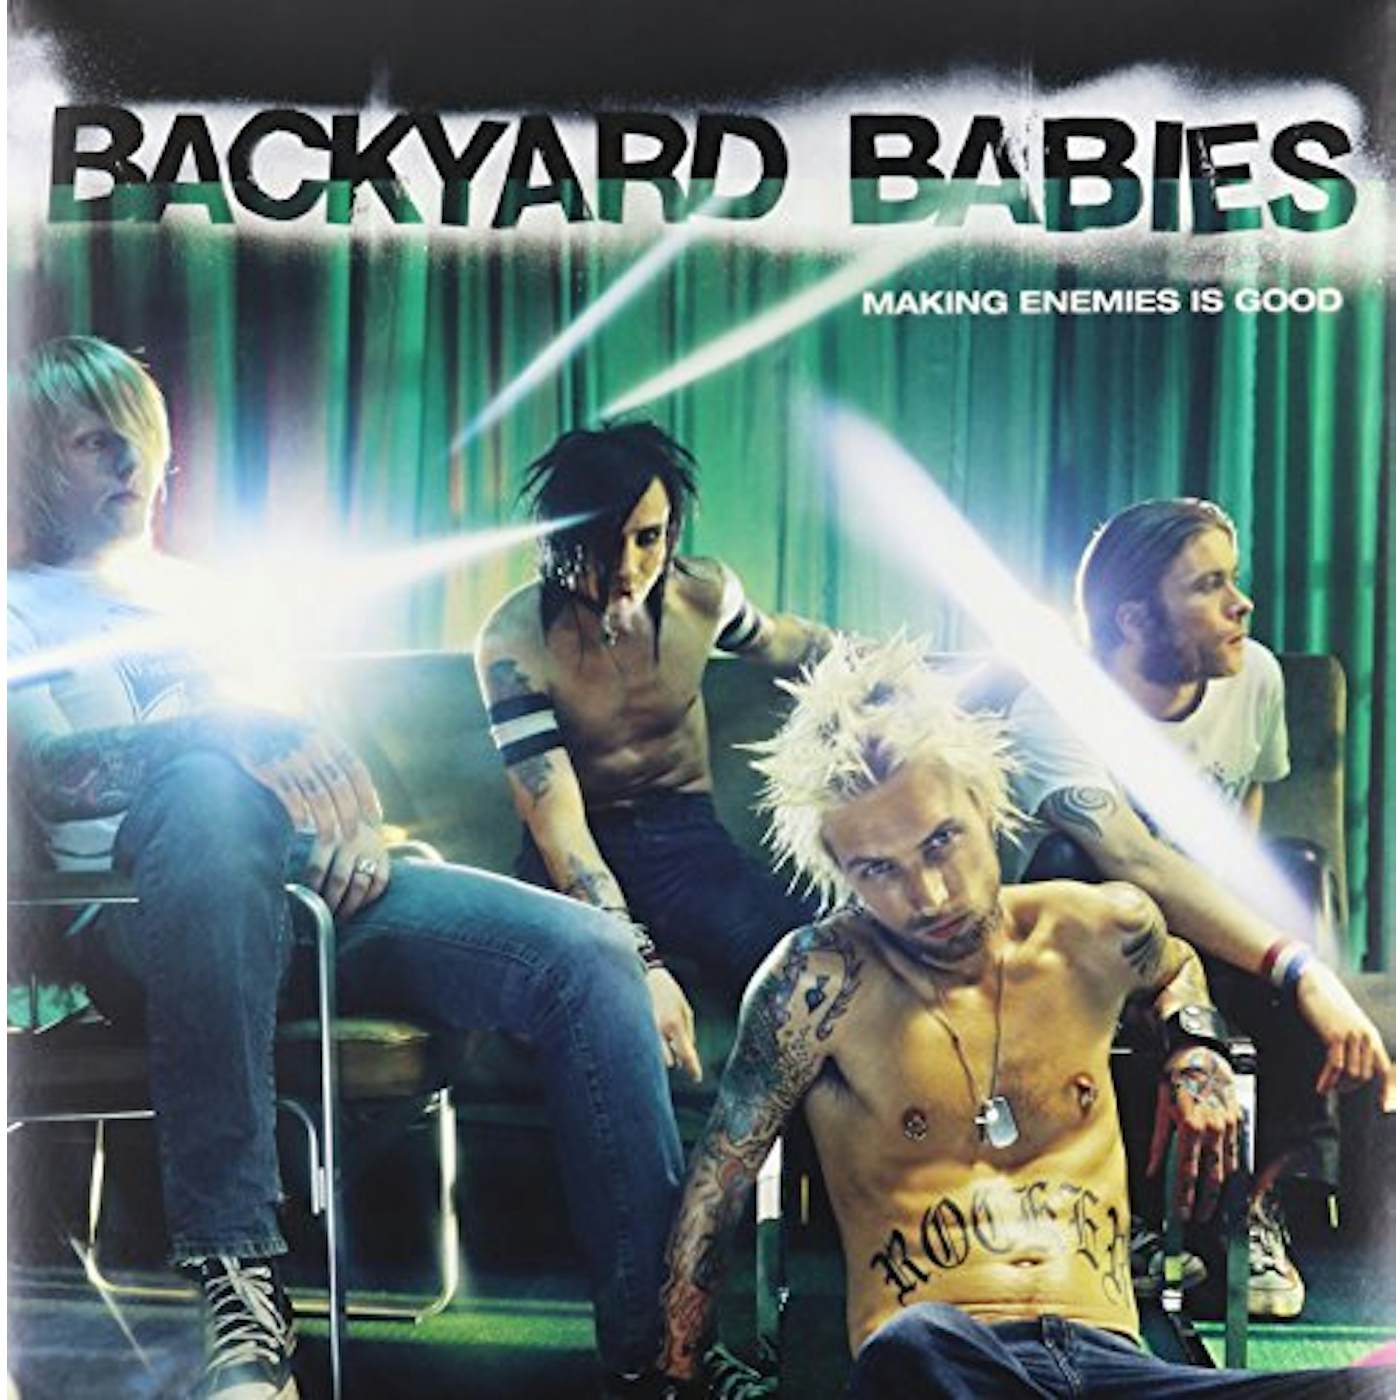 Backyard Babies MAKING ENEMIES IS GOOD (VINYL RE-ISSUE) Vinyl Record